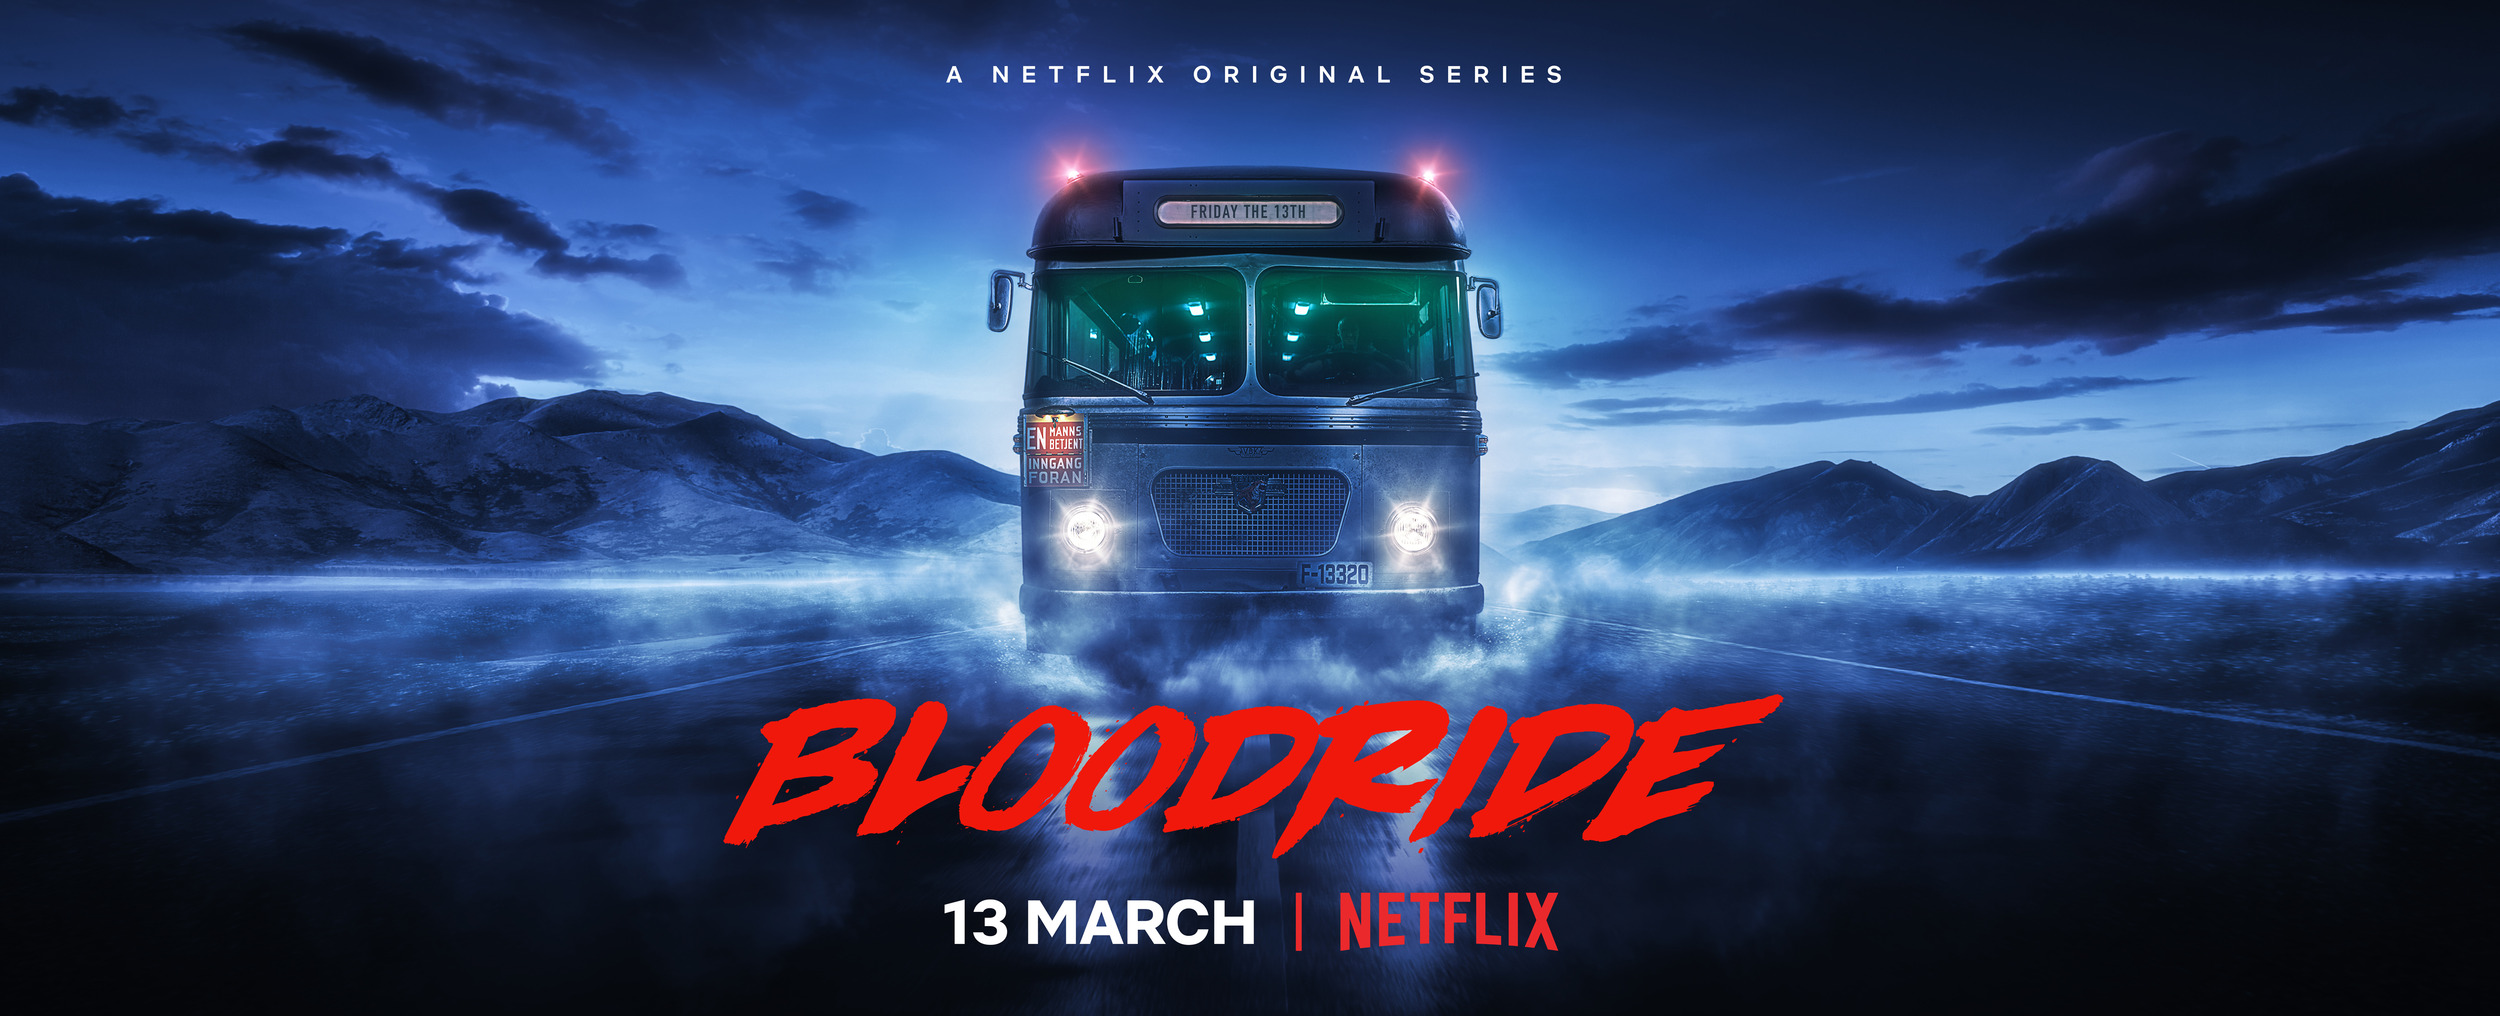 Mega Sized TV Poster Image for Bloodride (#2 of 8)